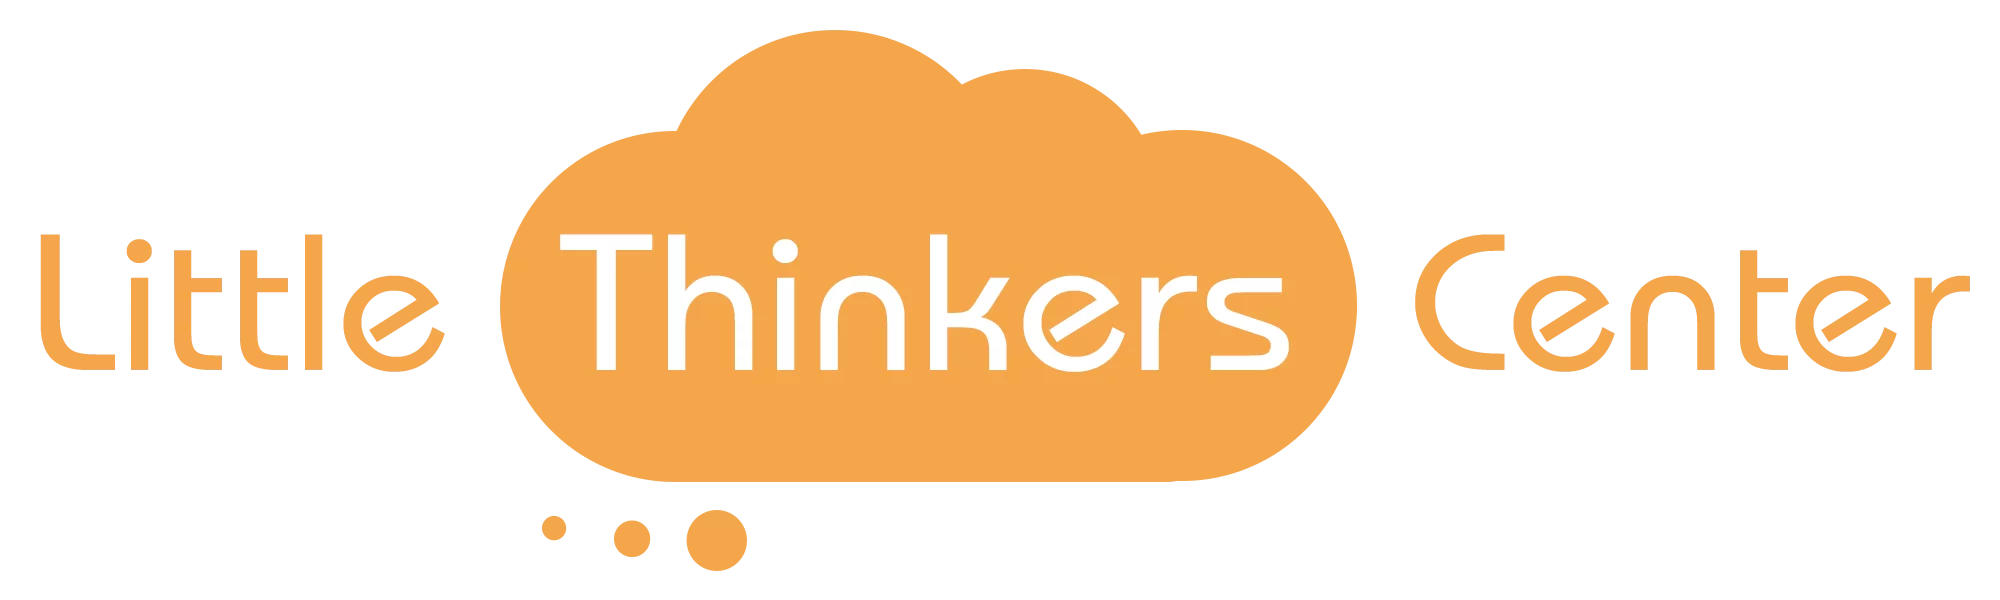 Little-Thinkers-Center-marked-logo.jpg